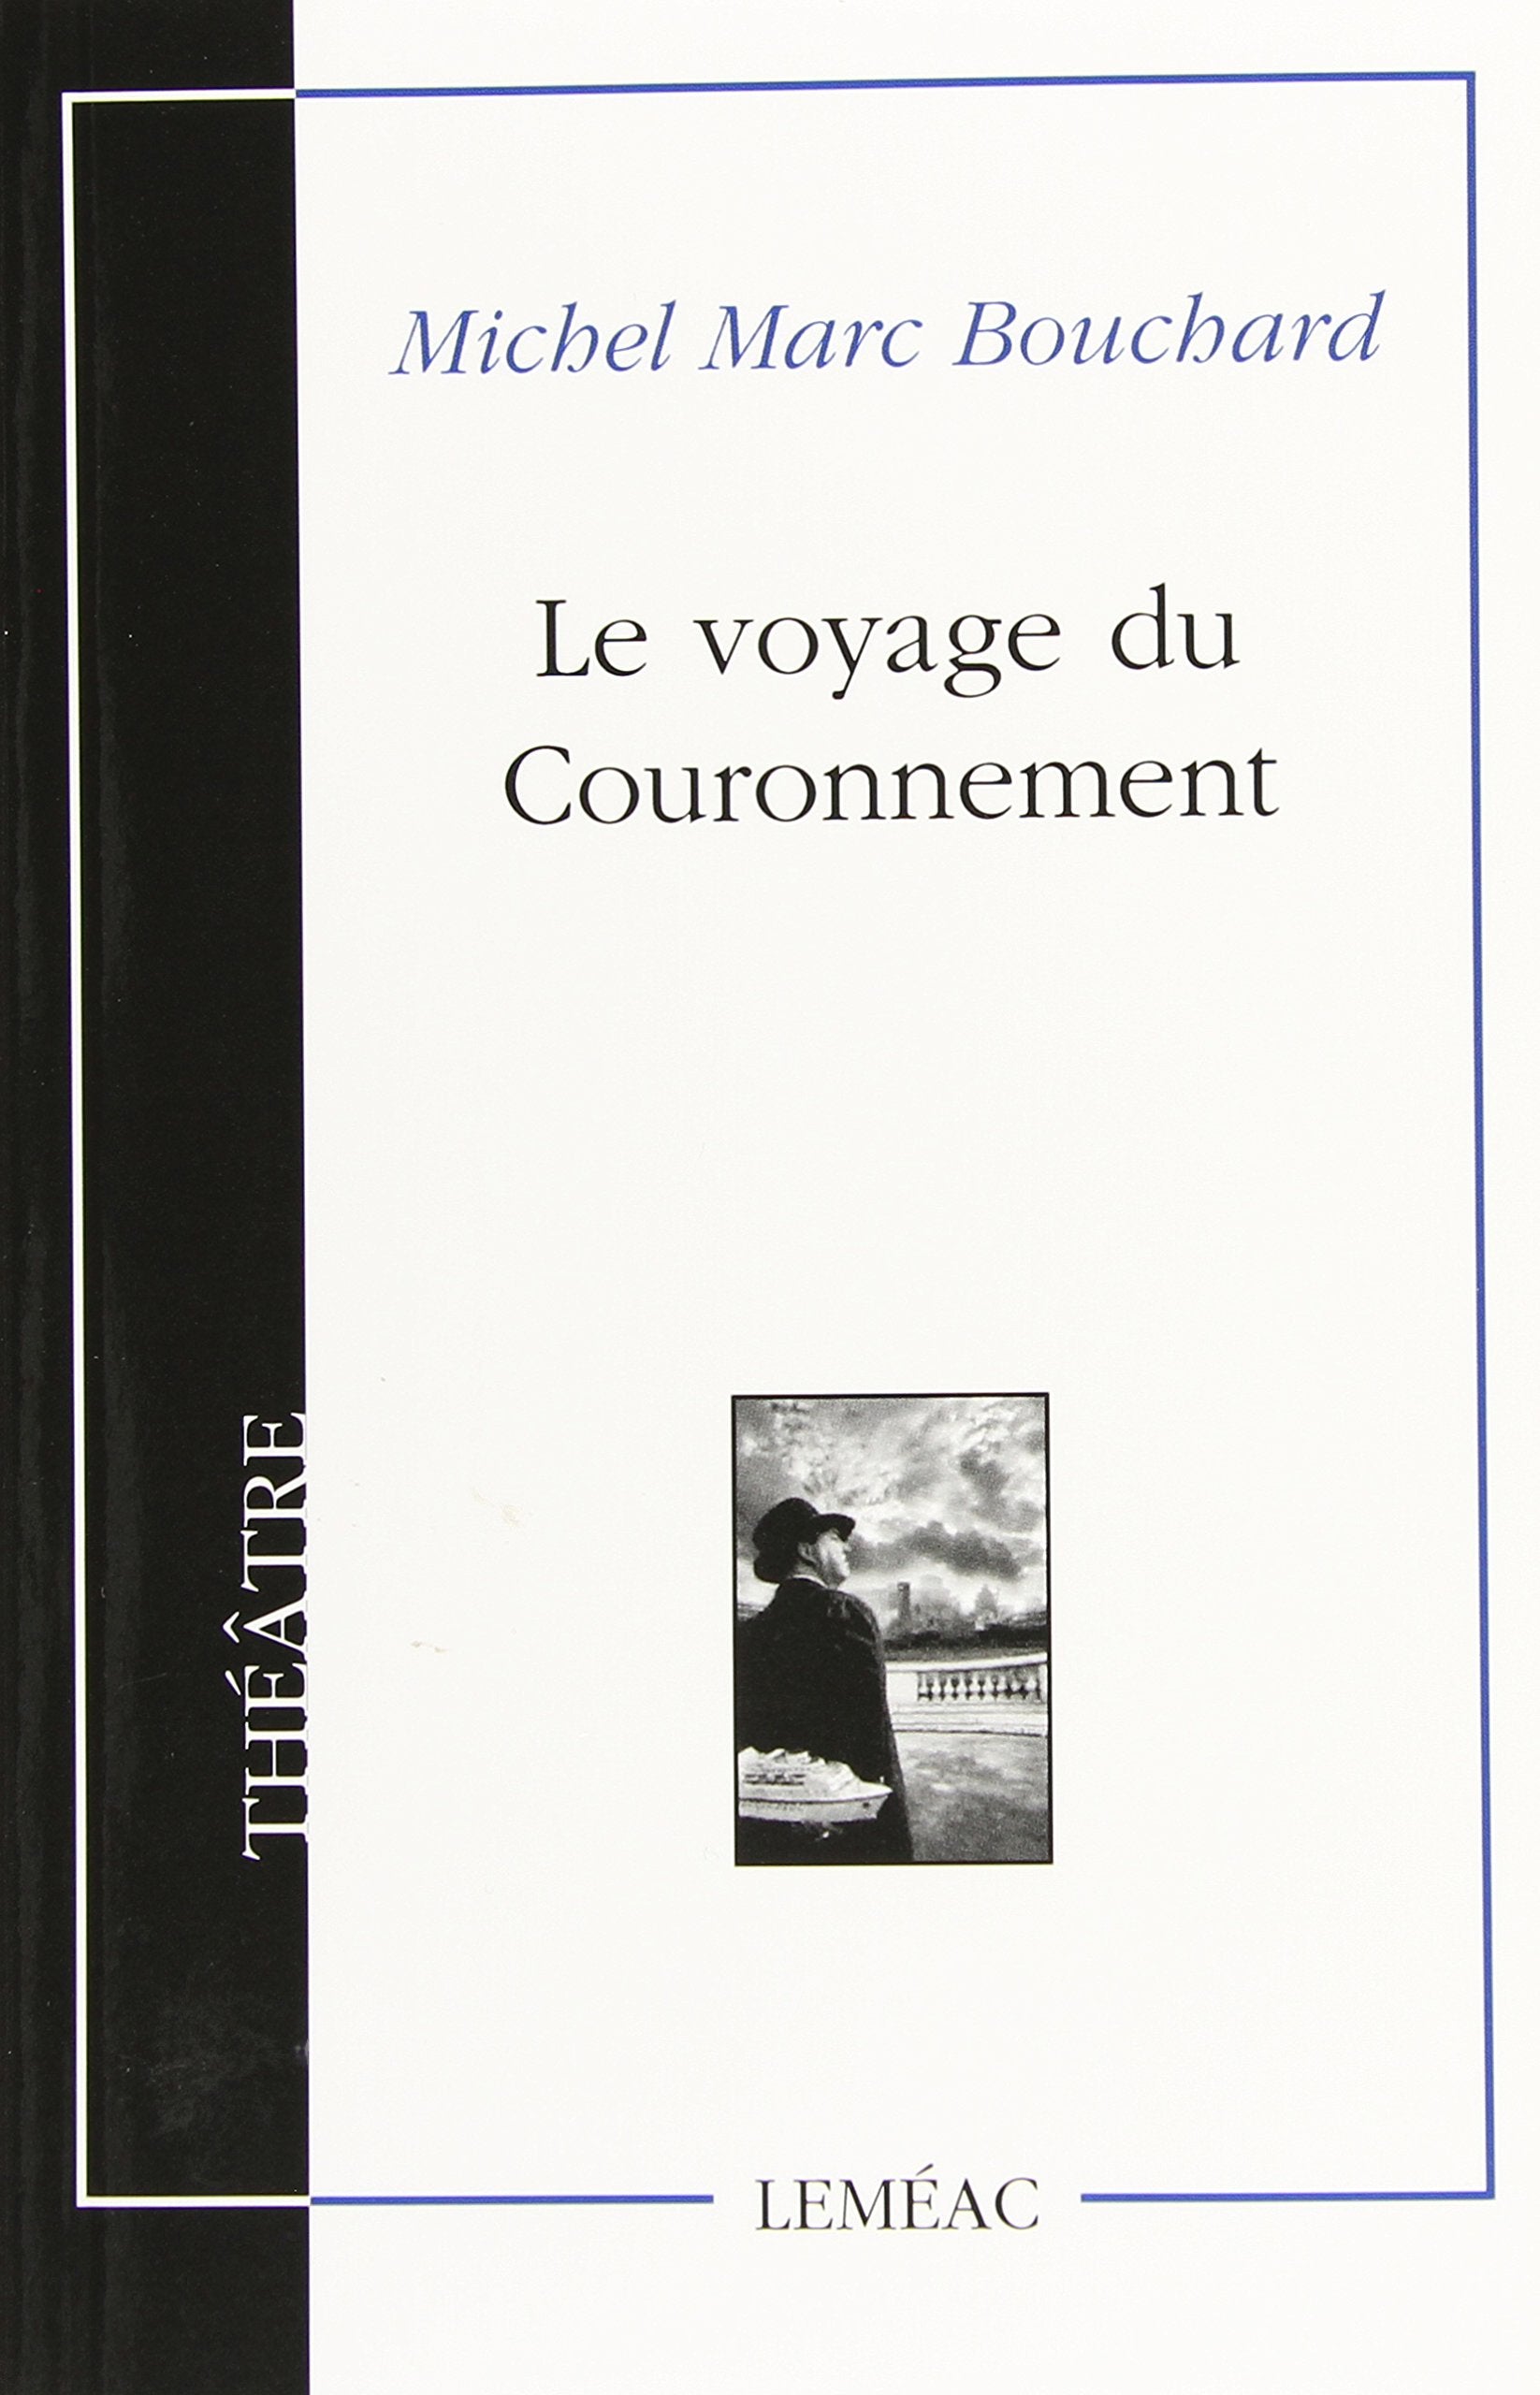 Livre ISBN 2760903788 Le voyage du couronnement (Michel Marc Bouchard)